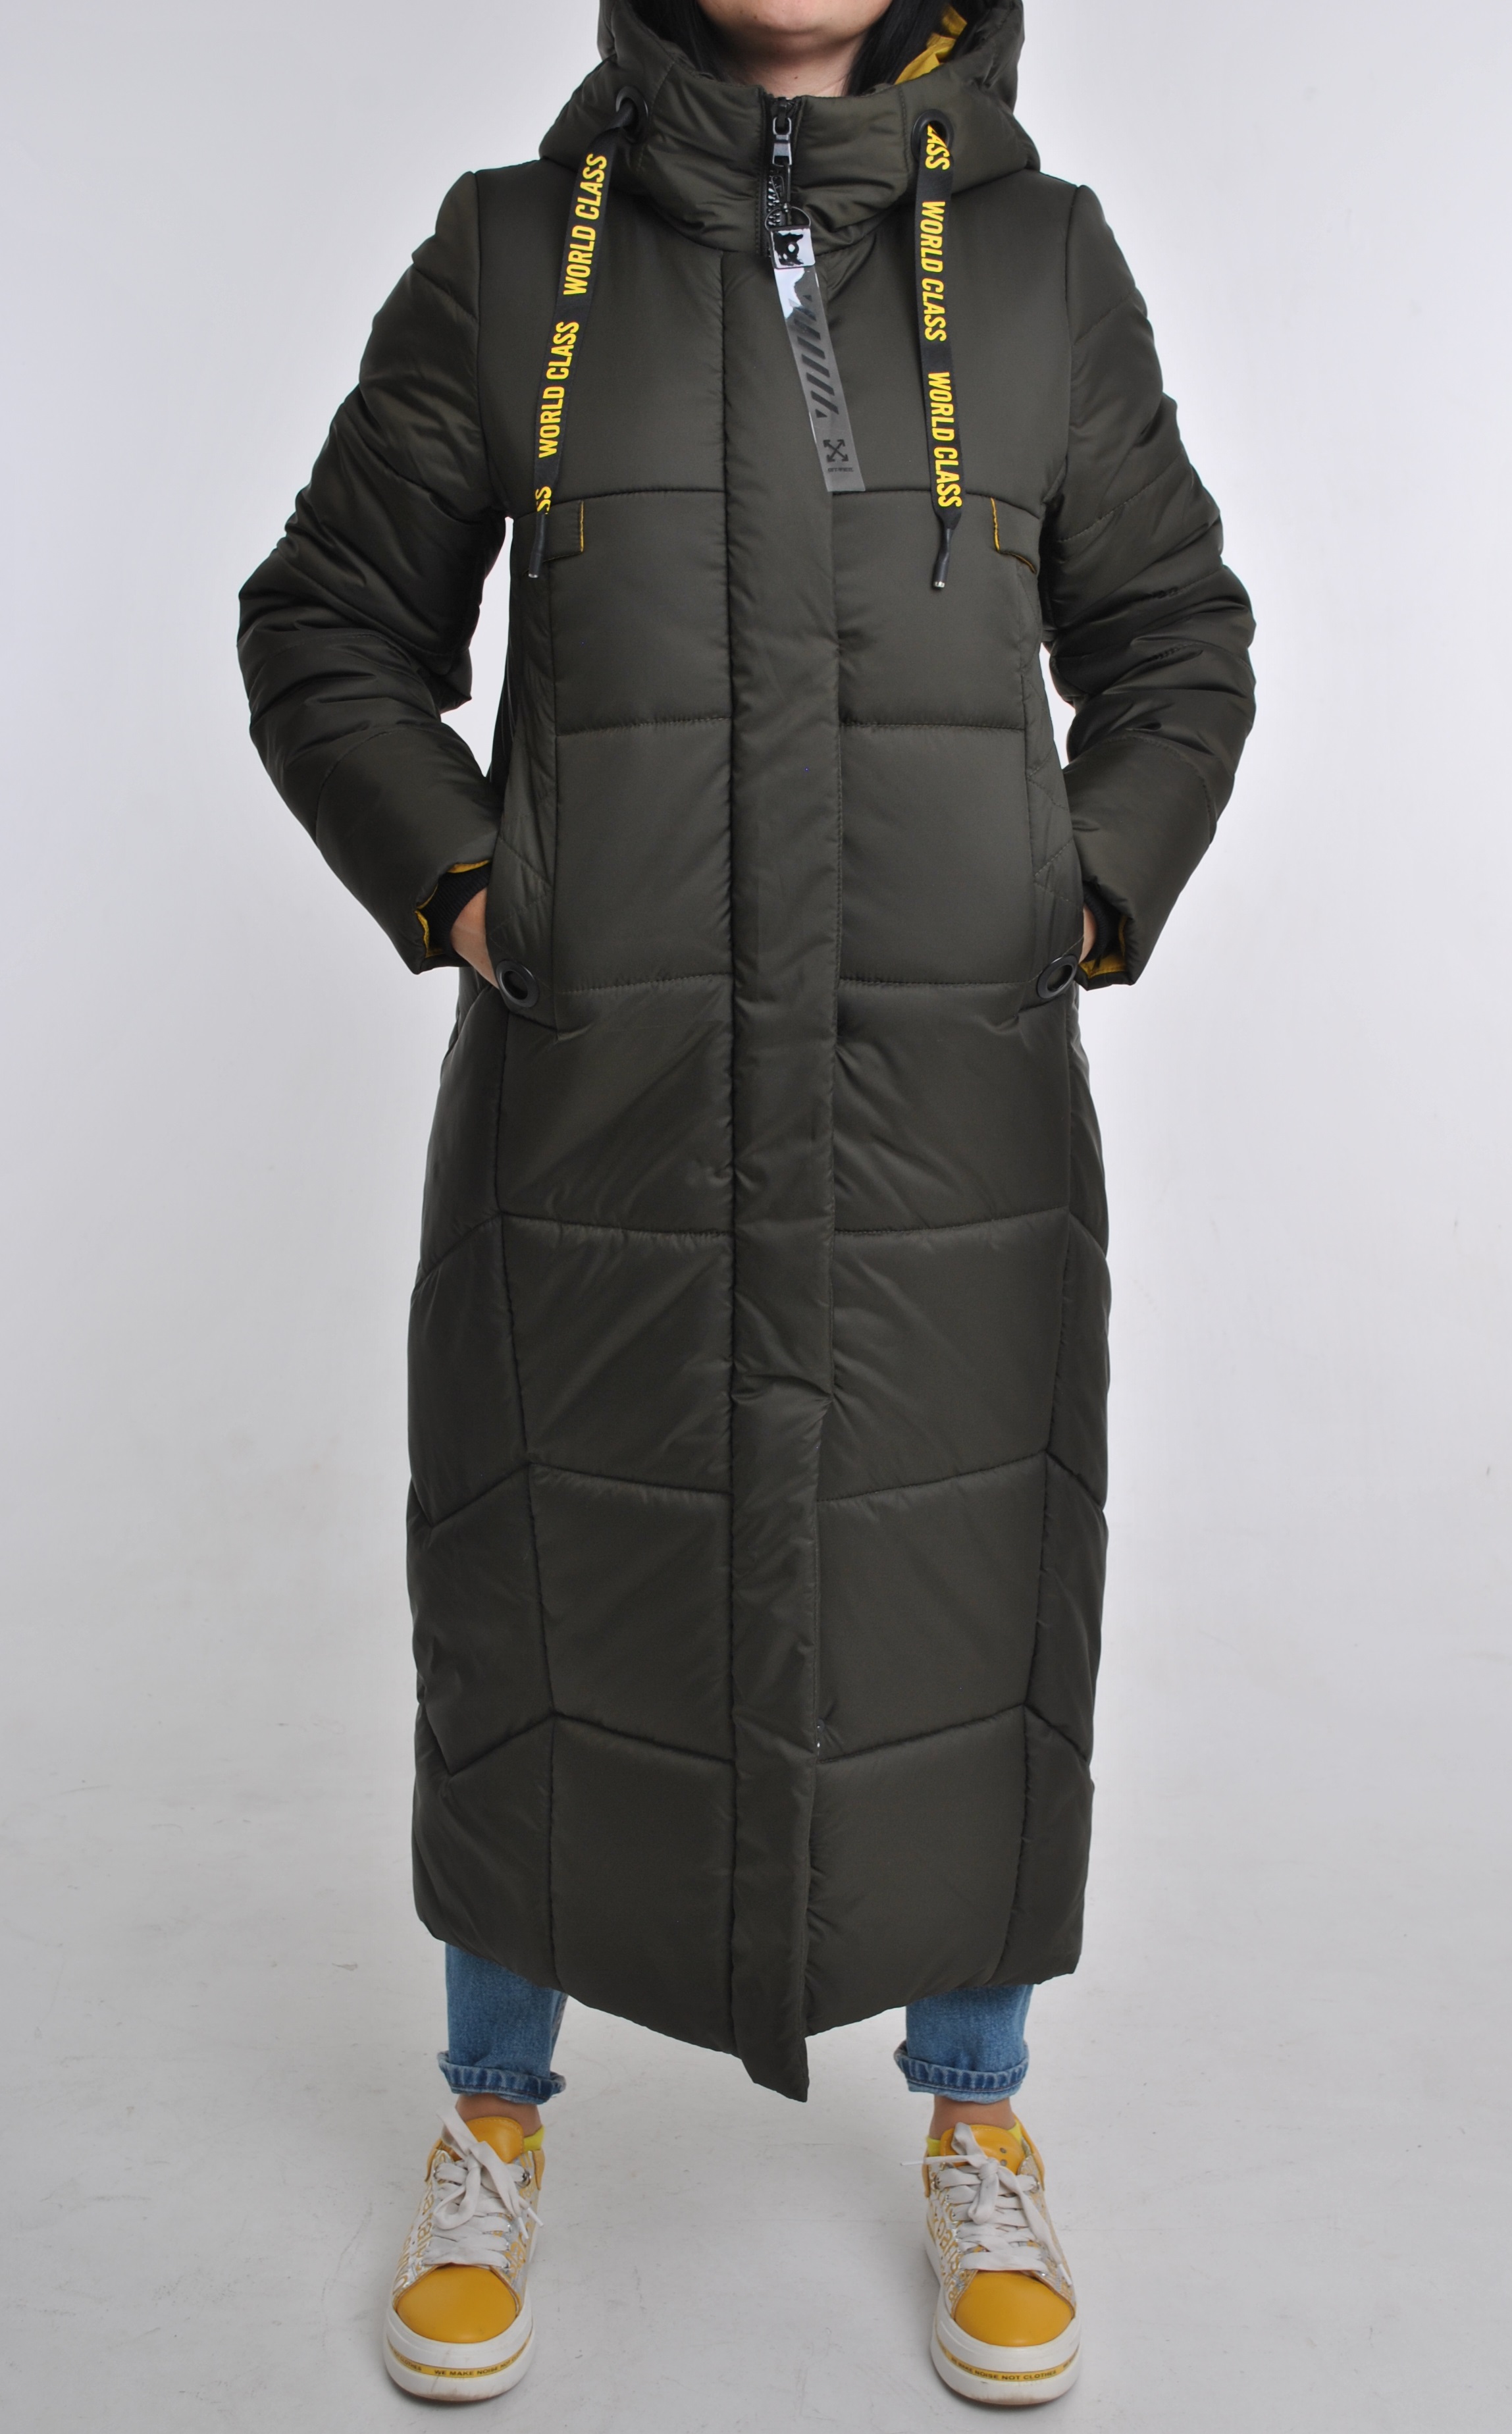 

Зимняя длинная теплая макси-куртка с капюшоном,в хаки - болотном цвете,р.54